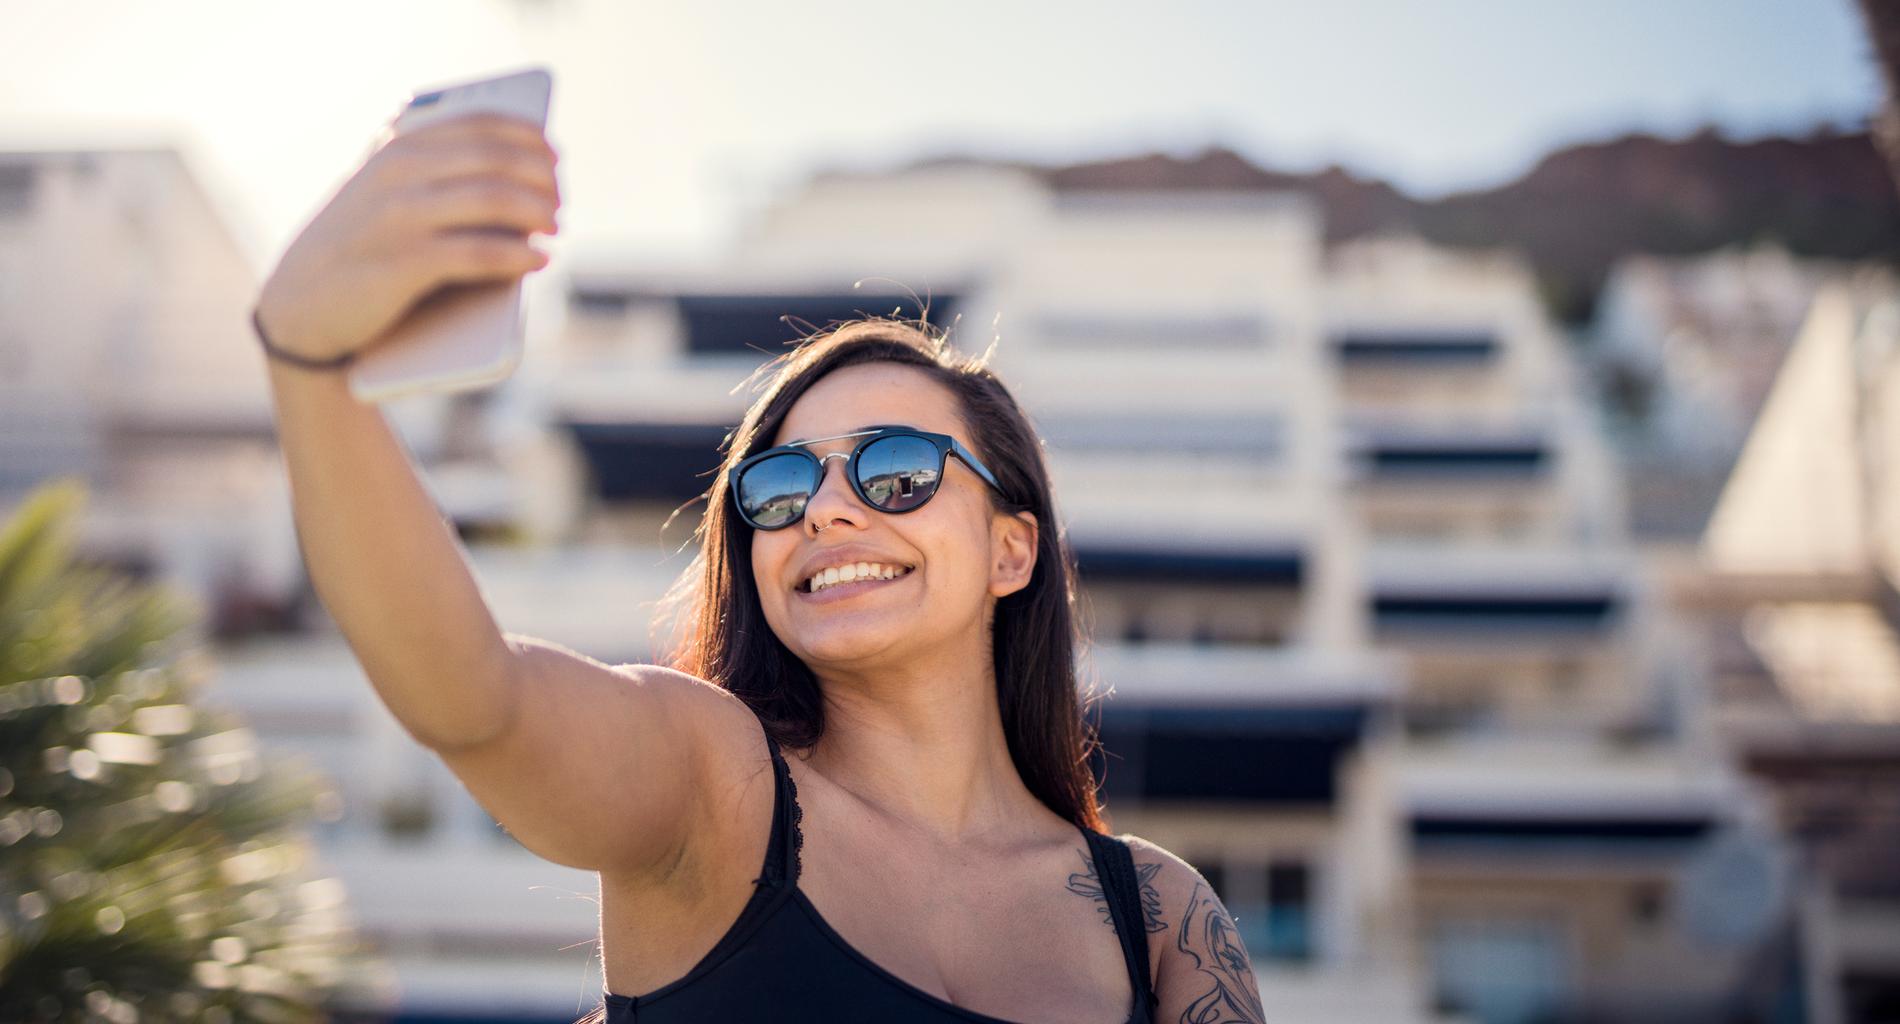 Amerikanska forskare har räknat ut att näsan ser 30 procent större ut om man tar en selfie på nära håll